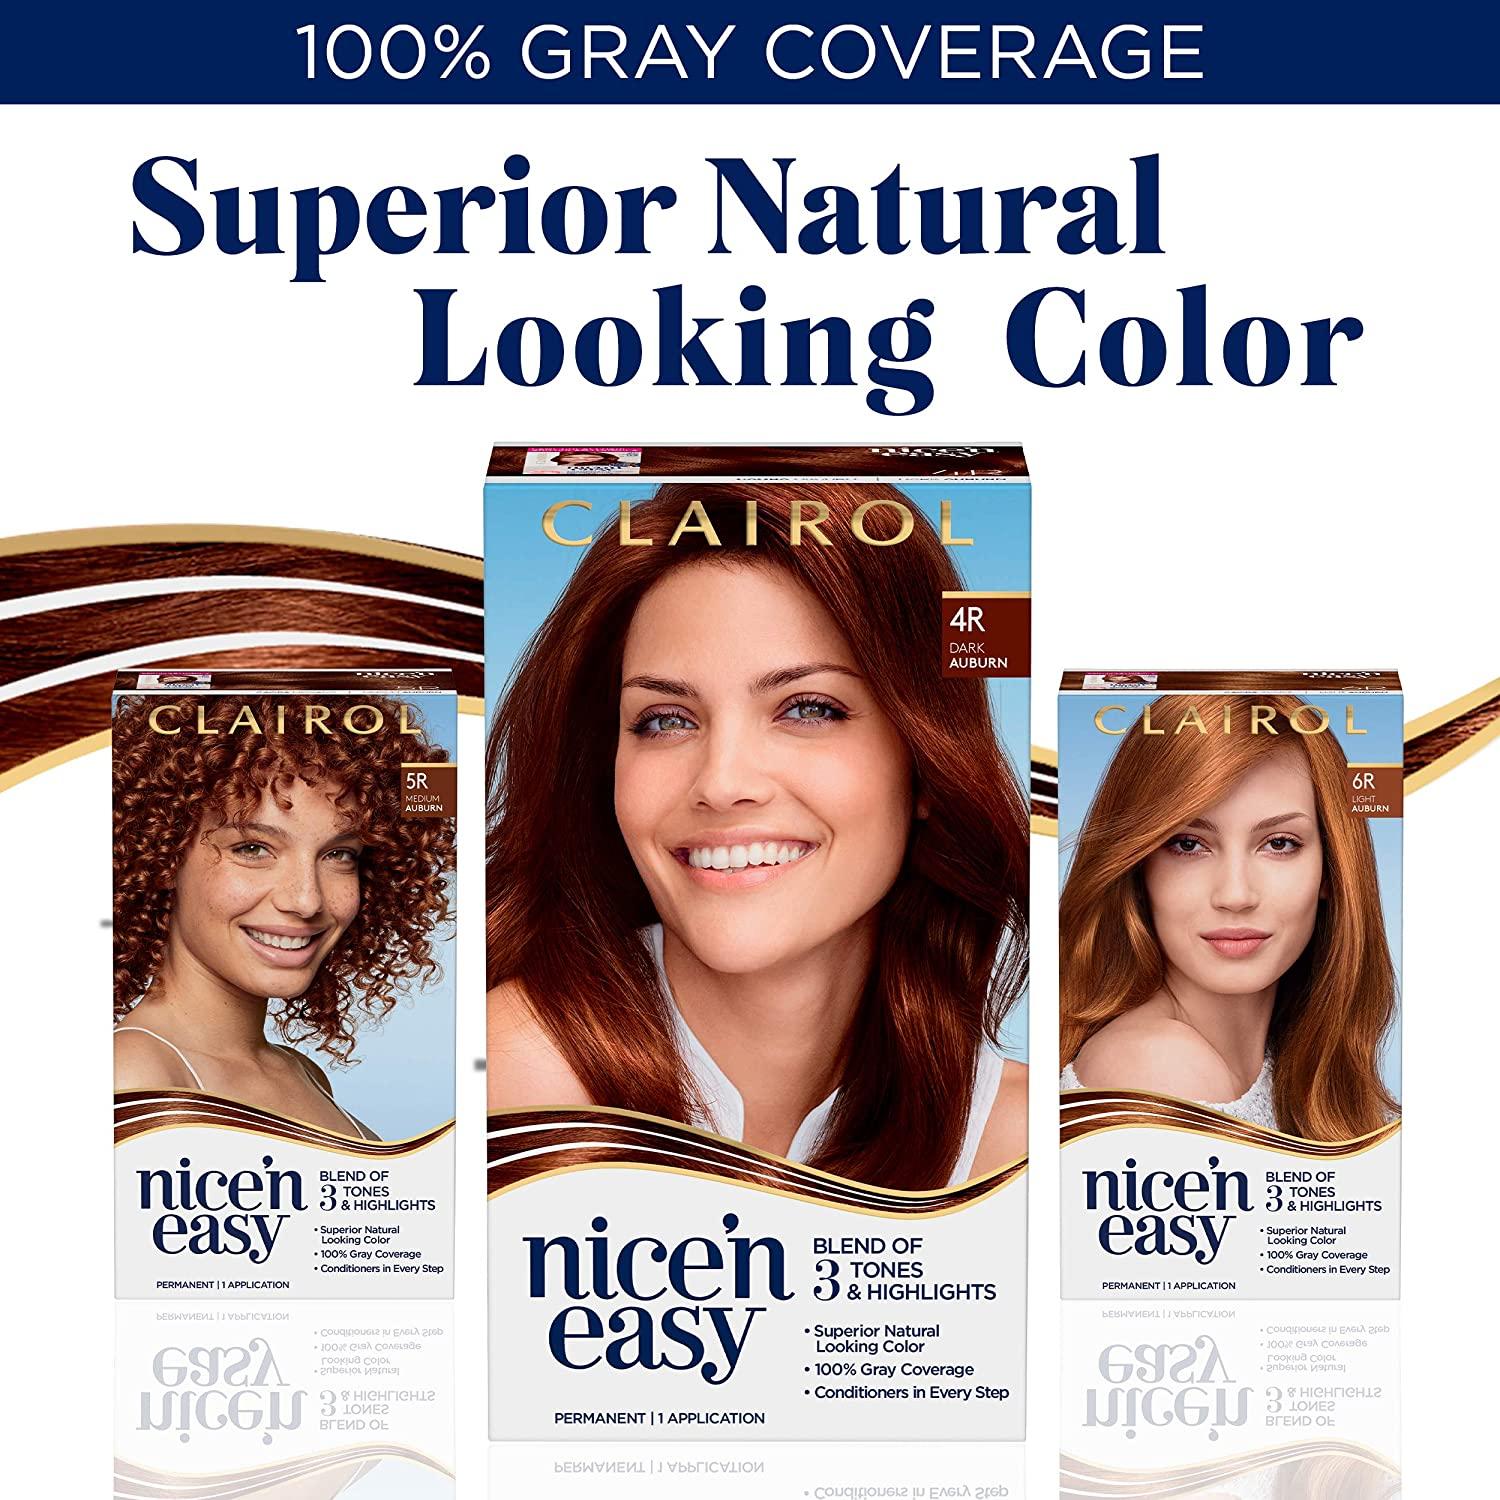 Clairol Nice'n Easy Permanent Hair Dye, 5R Medium Auburn Hair Color, Pack  of 1 5R Medium Auburn Pack of 1